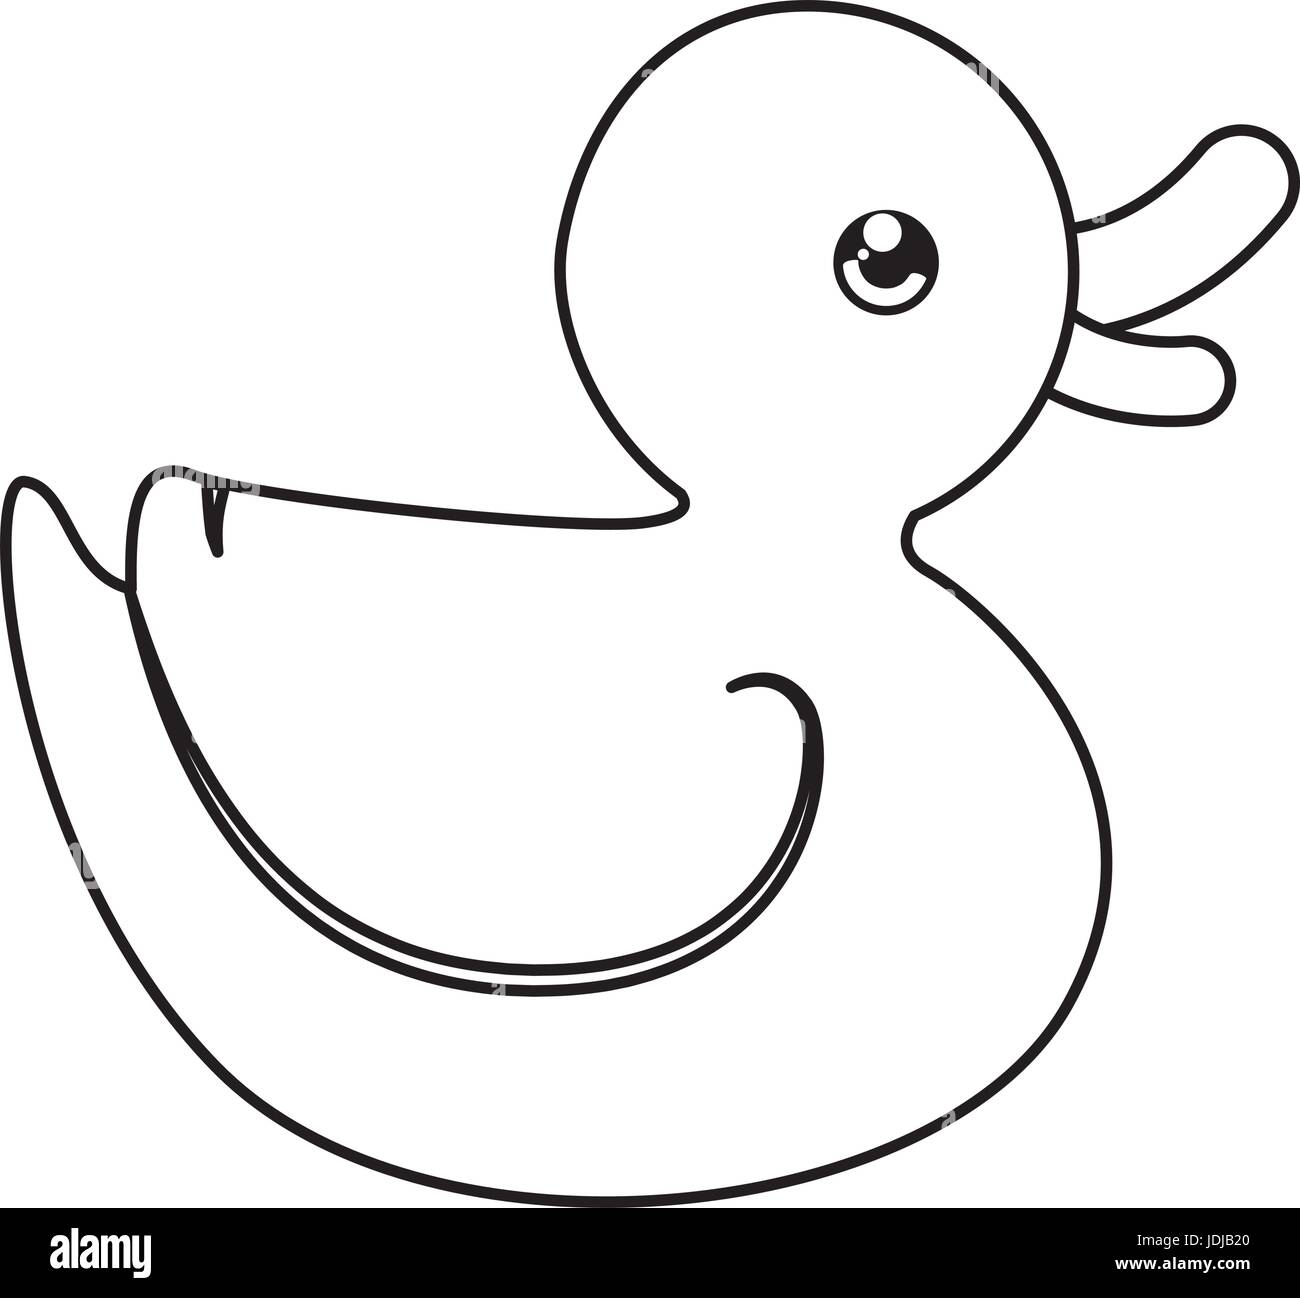 duck toy cartoon Stock Vector Image & Art - Alamy